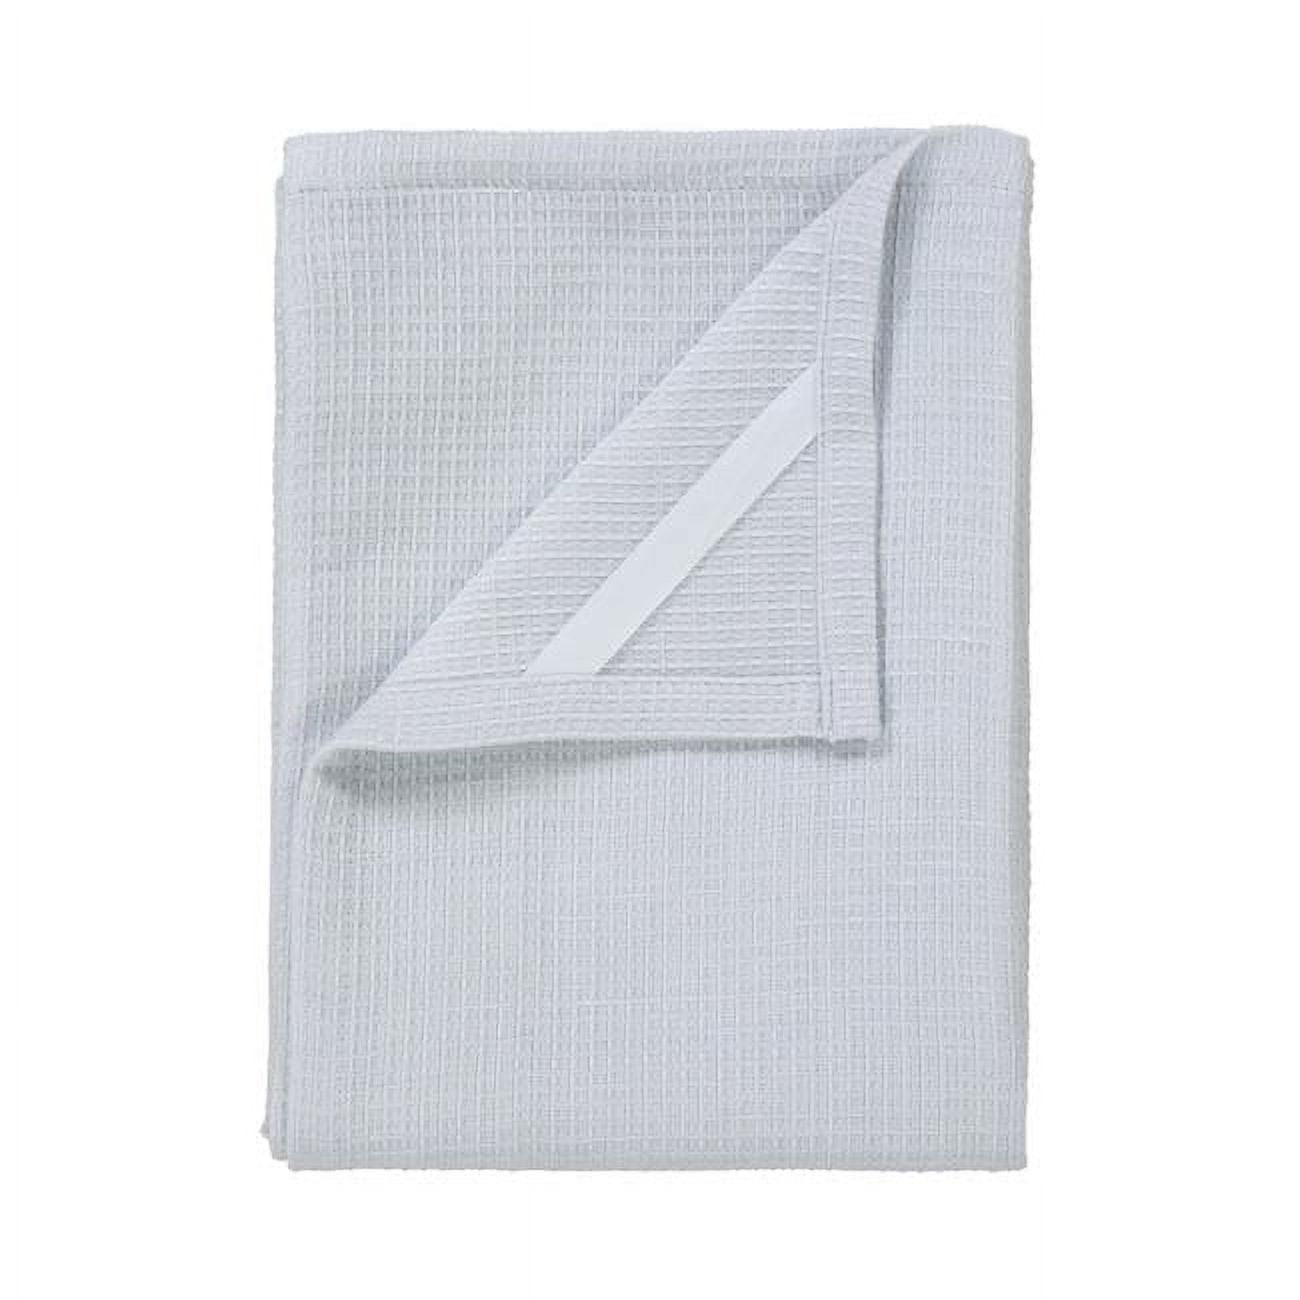 63843 Grid Tea Towels, Microchip - Pack Of 2